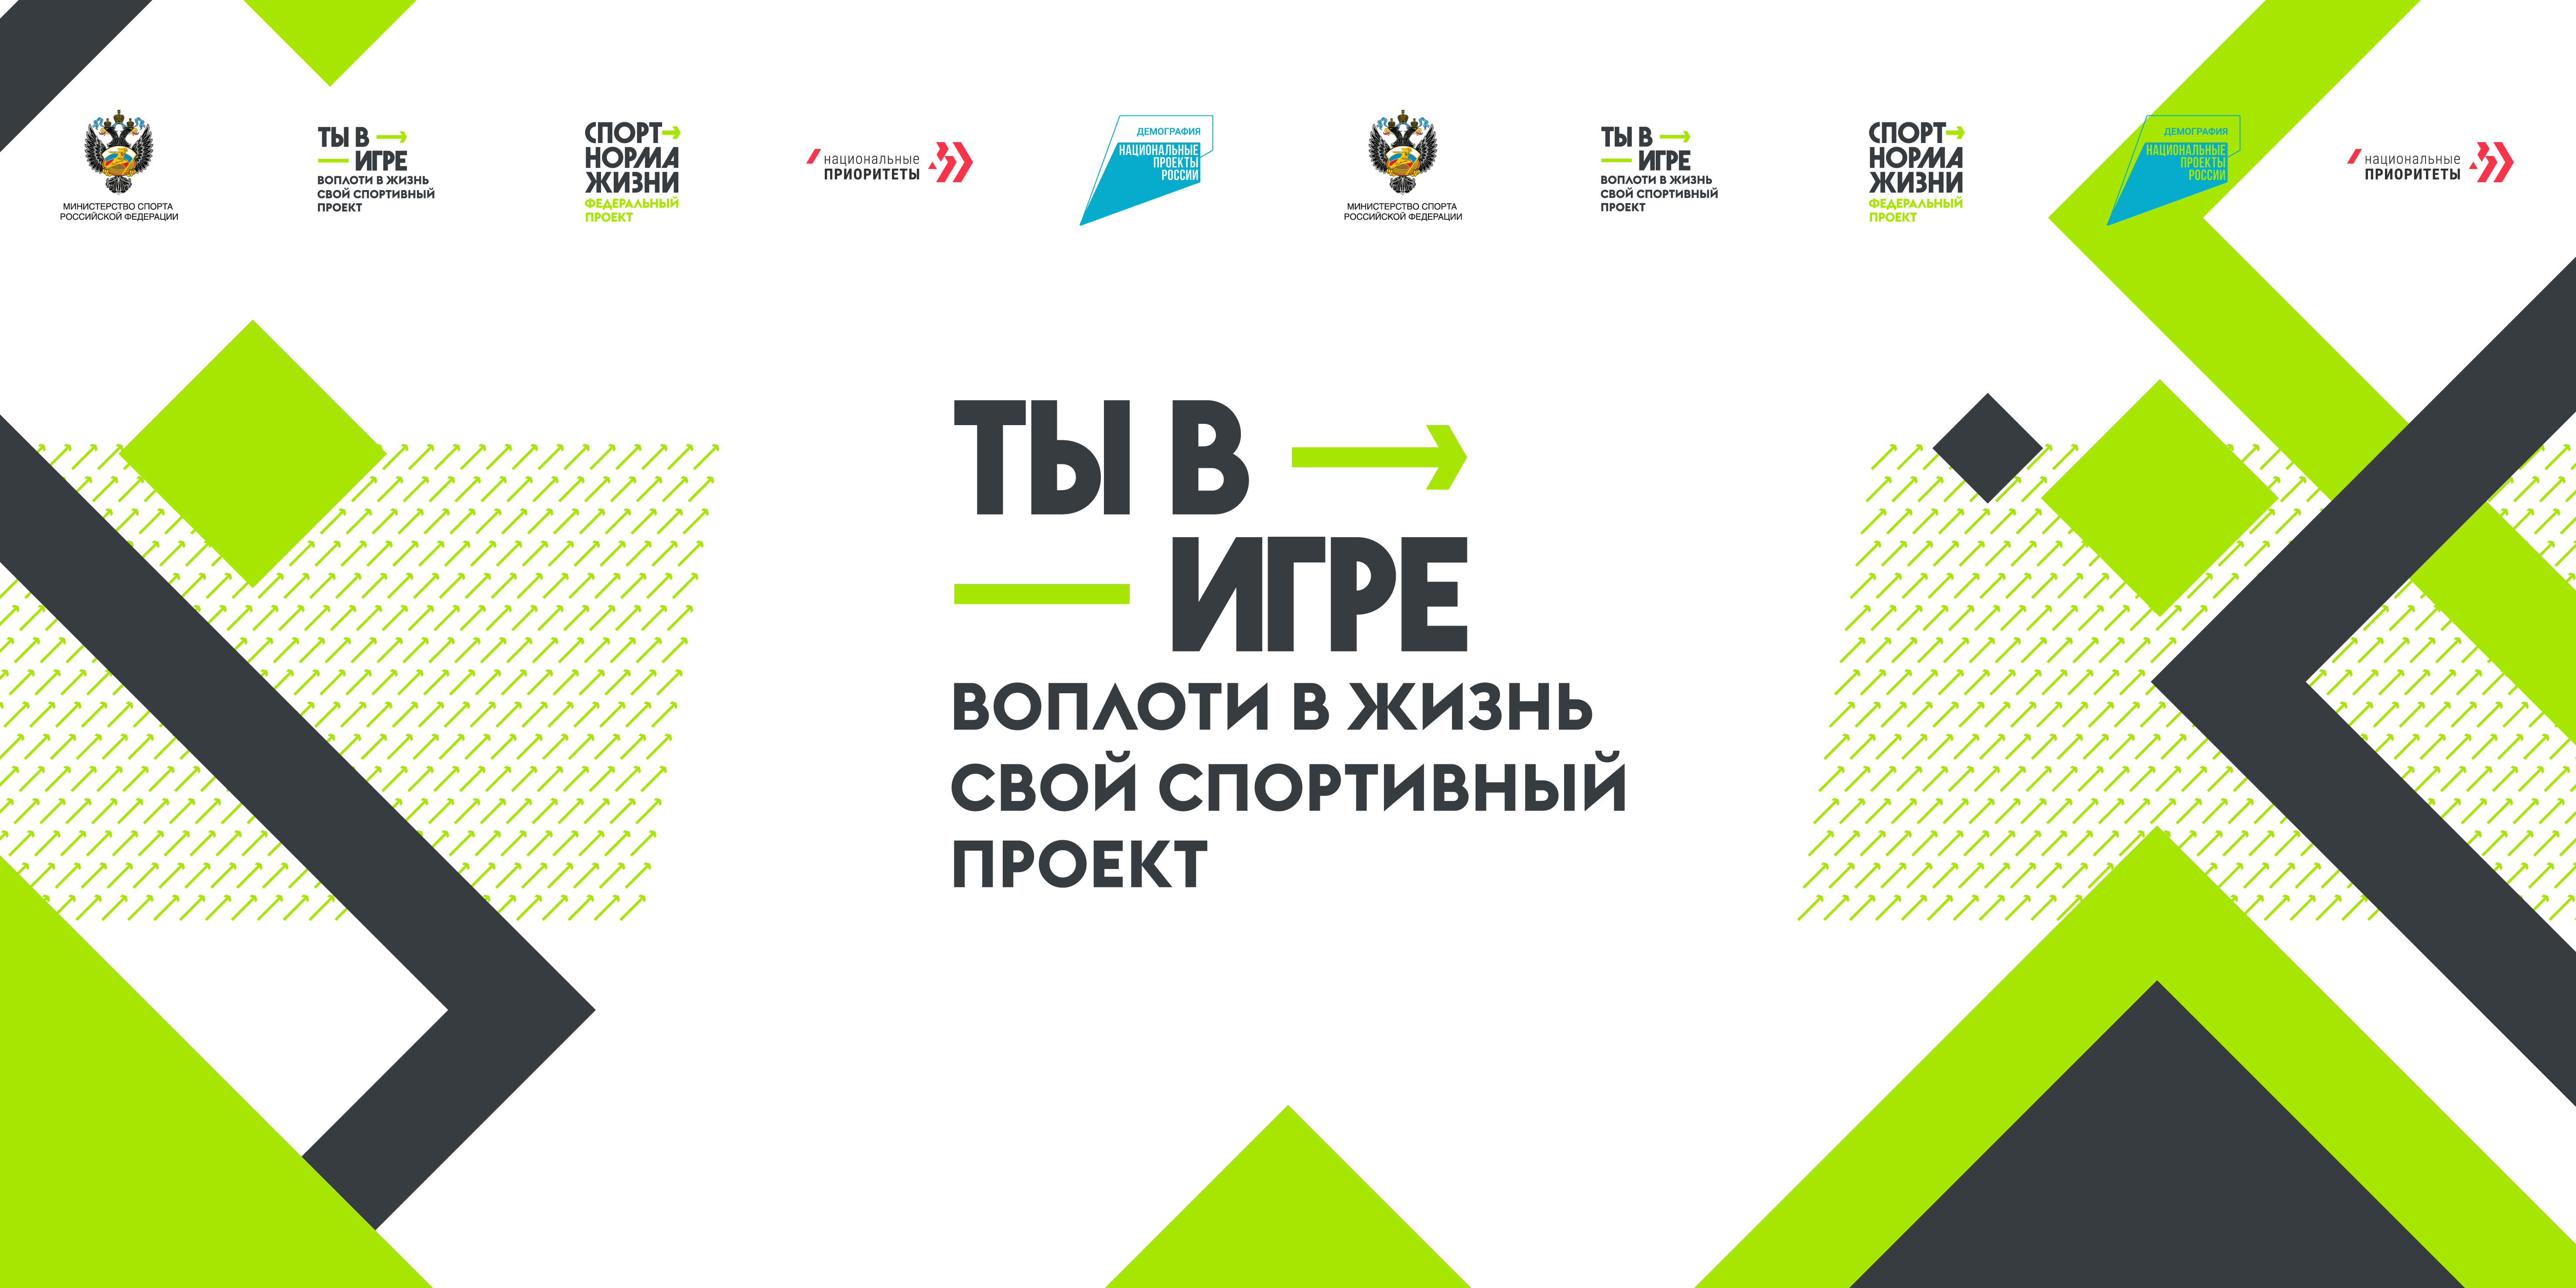 14 нижегородских проектов вошли в лонг-лист Всероссийского конкурса спортивных проектов «Ты в игре!»